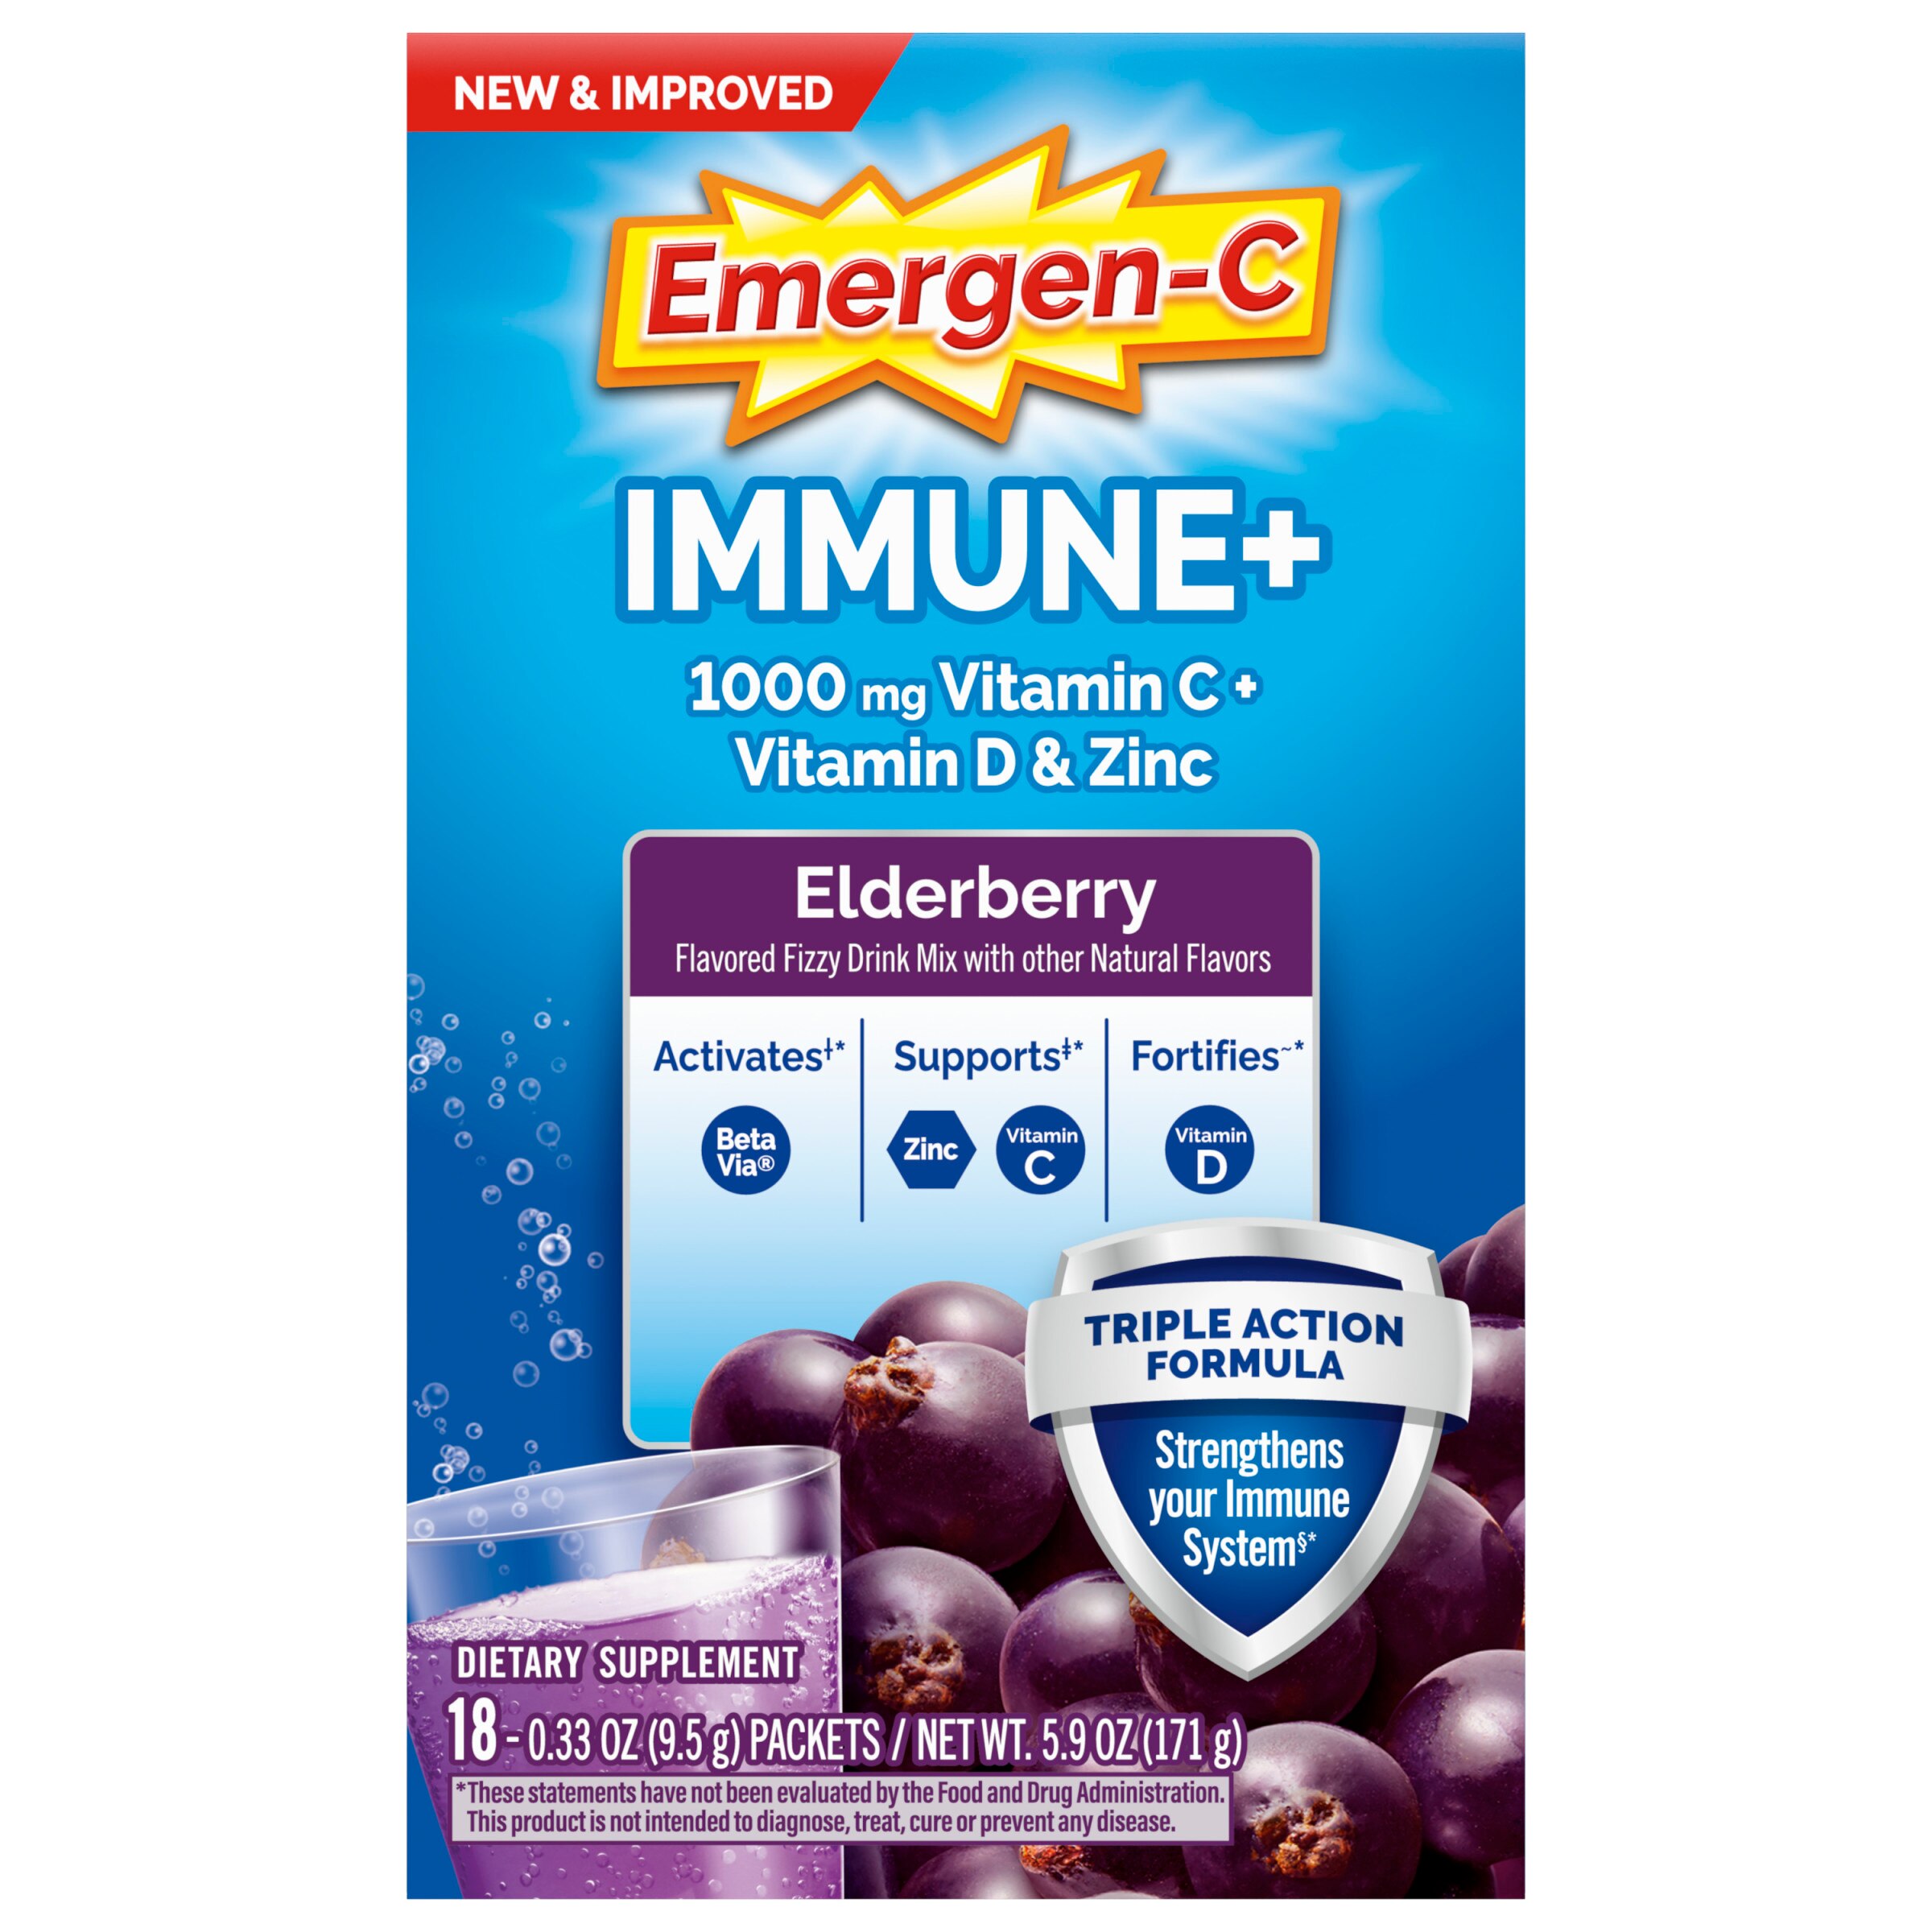 Emergen-C Immune+ Vitamin C 1000mg Immune Support Drink Mix Powder Packets, Elderberry Flavor - 18 Count